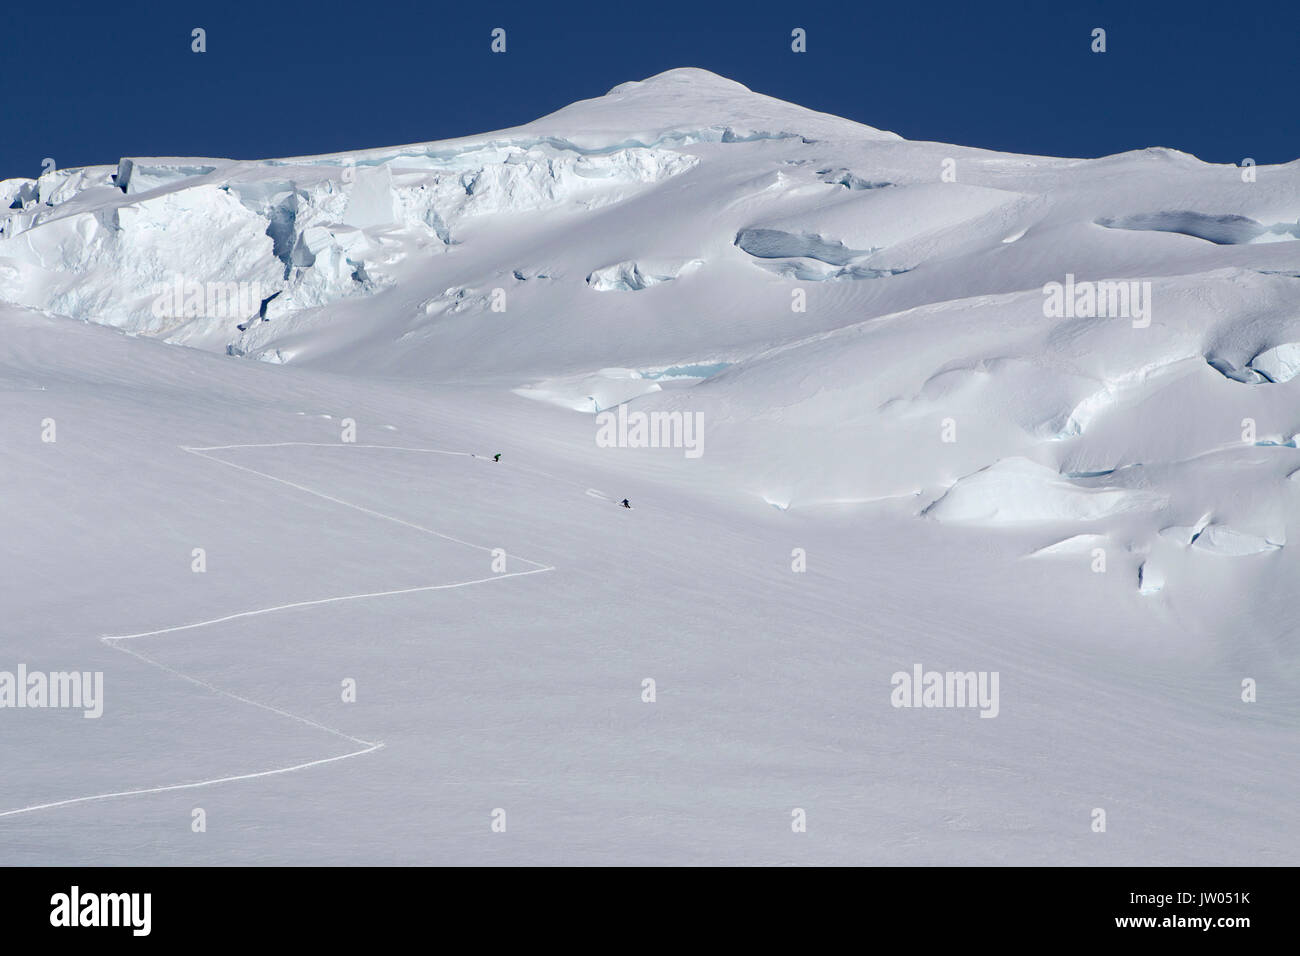 Les alpinistes sont en bas d'une pente de ski à 12,000 pieds sur Denali, en Alaska. Banque D'Images